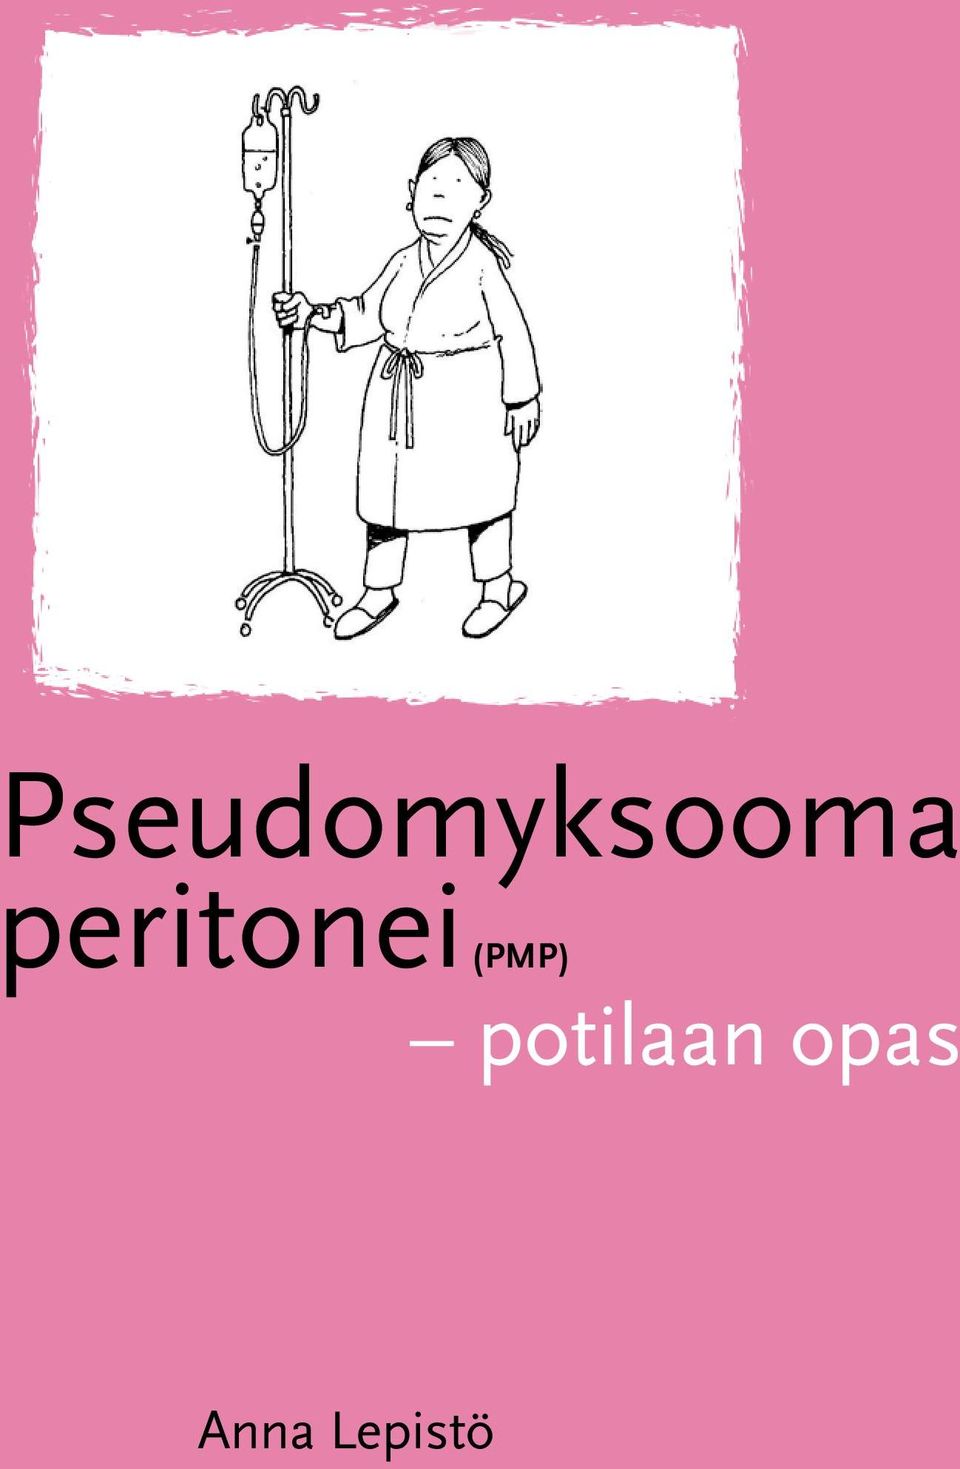 (PMP) potilaan